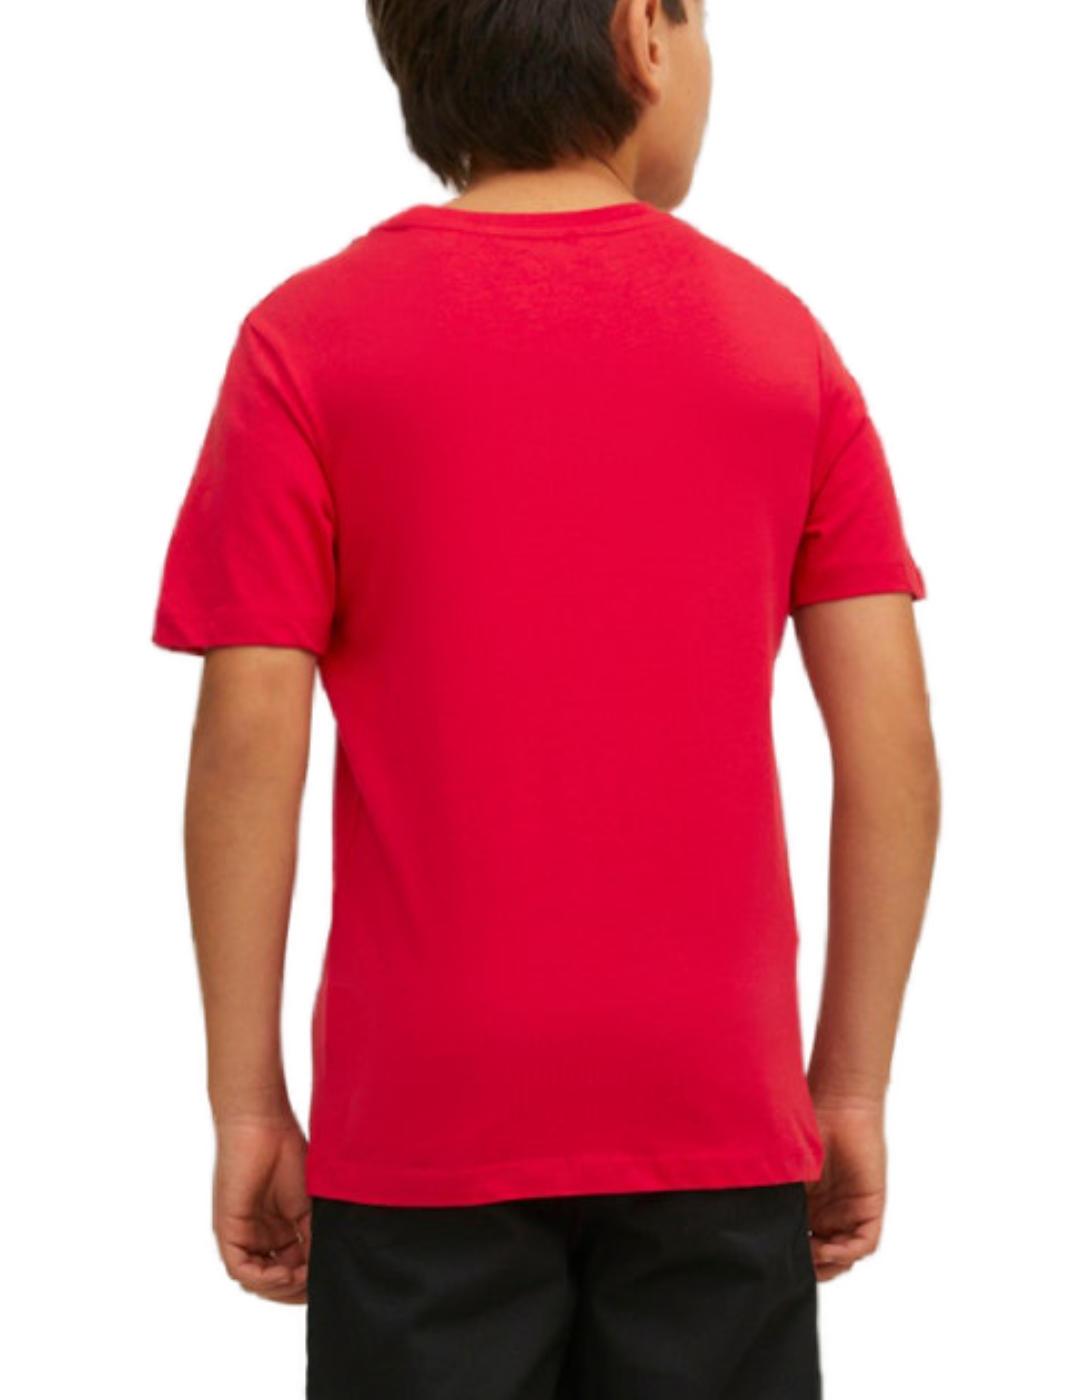 Camiseta Jack&Jones Junior Corp roja manga corta para niño